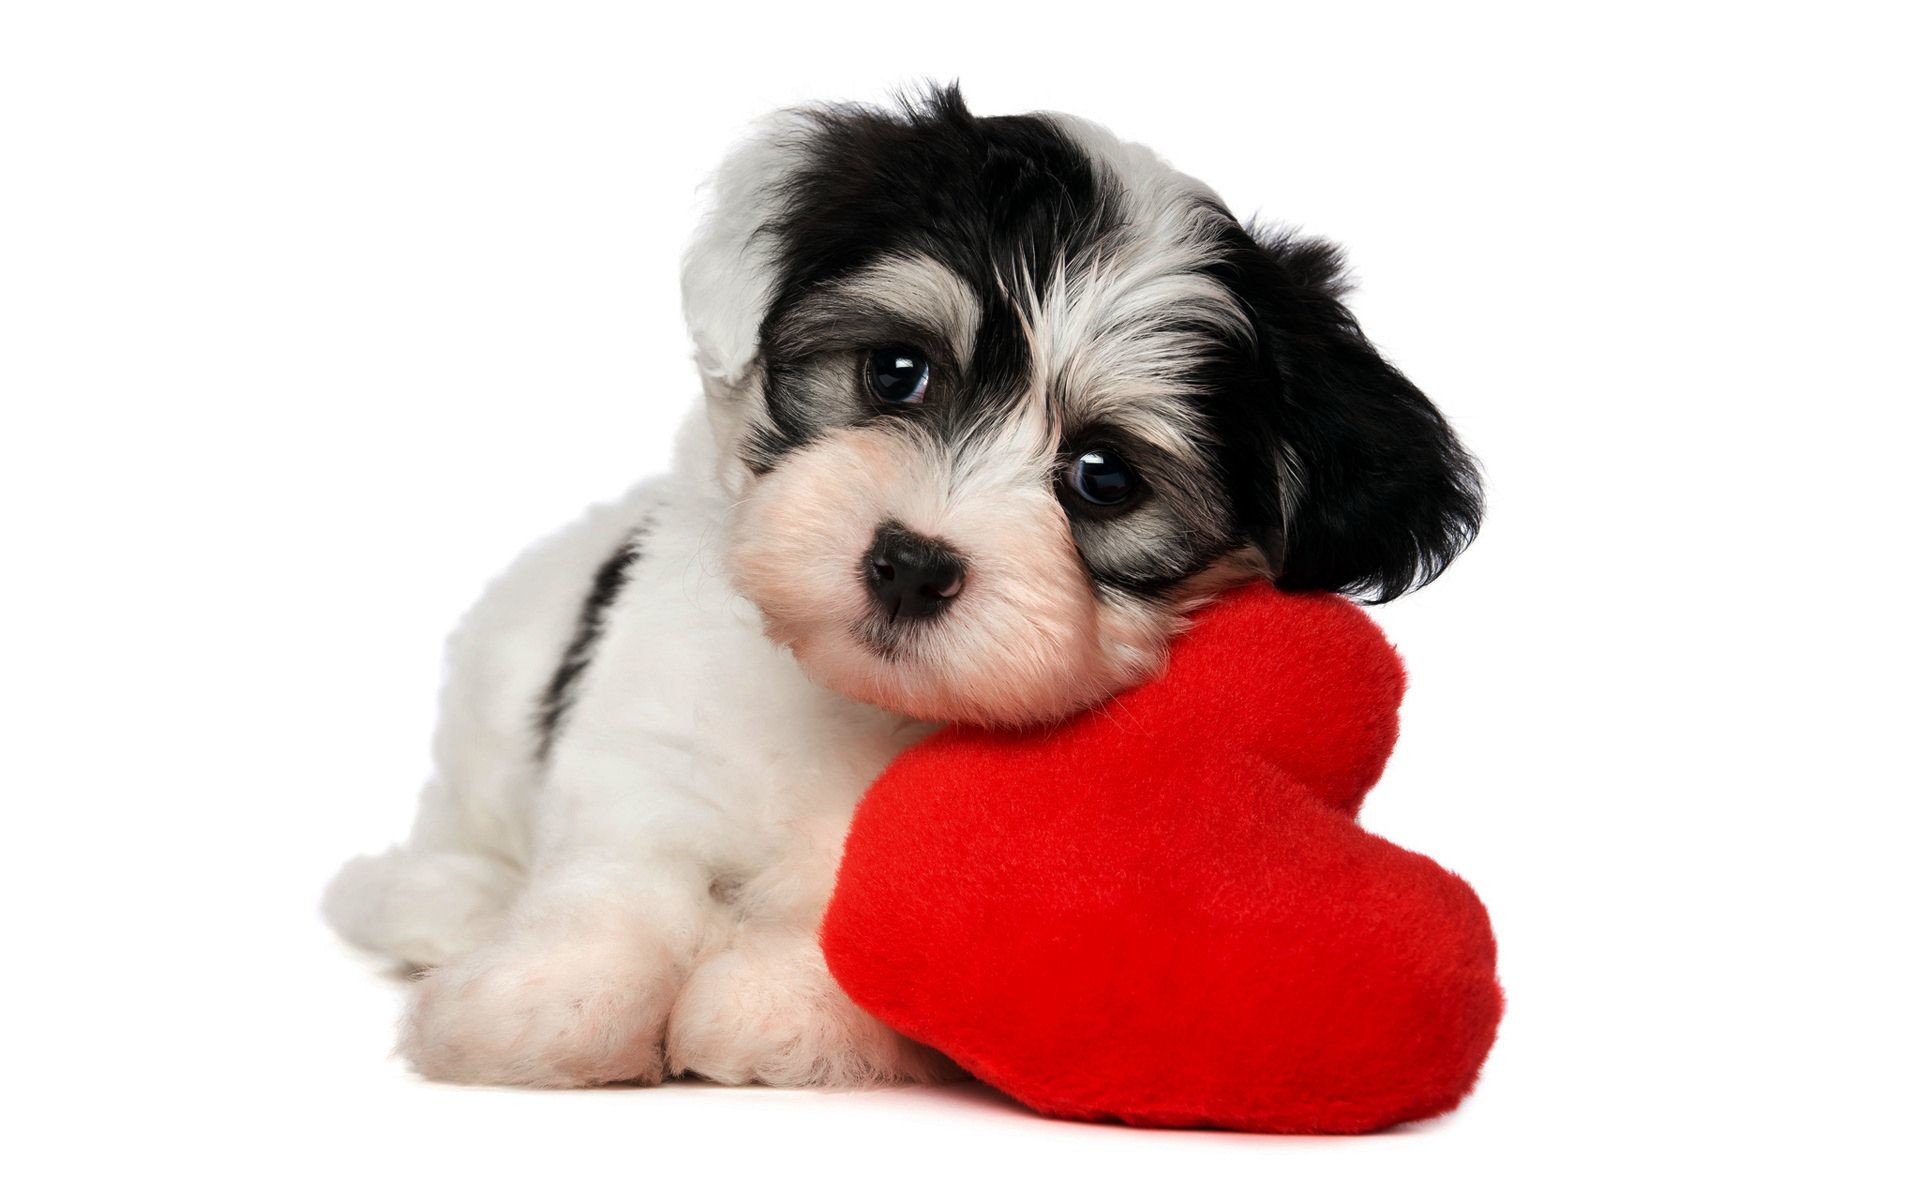 Puppy Valentine Wallpaper